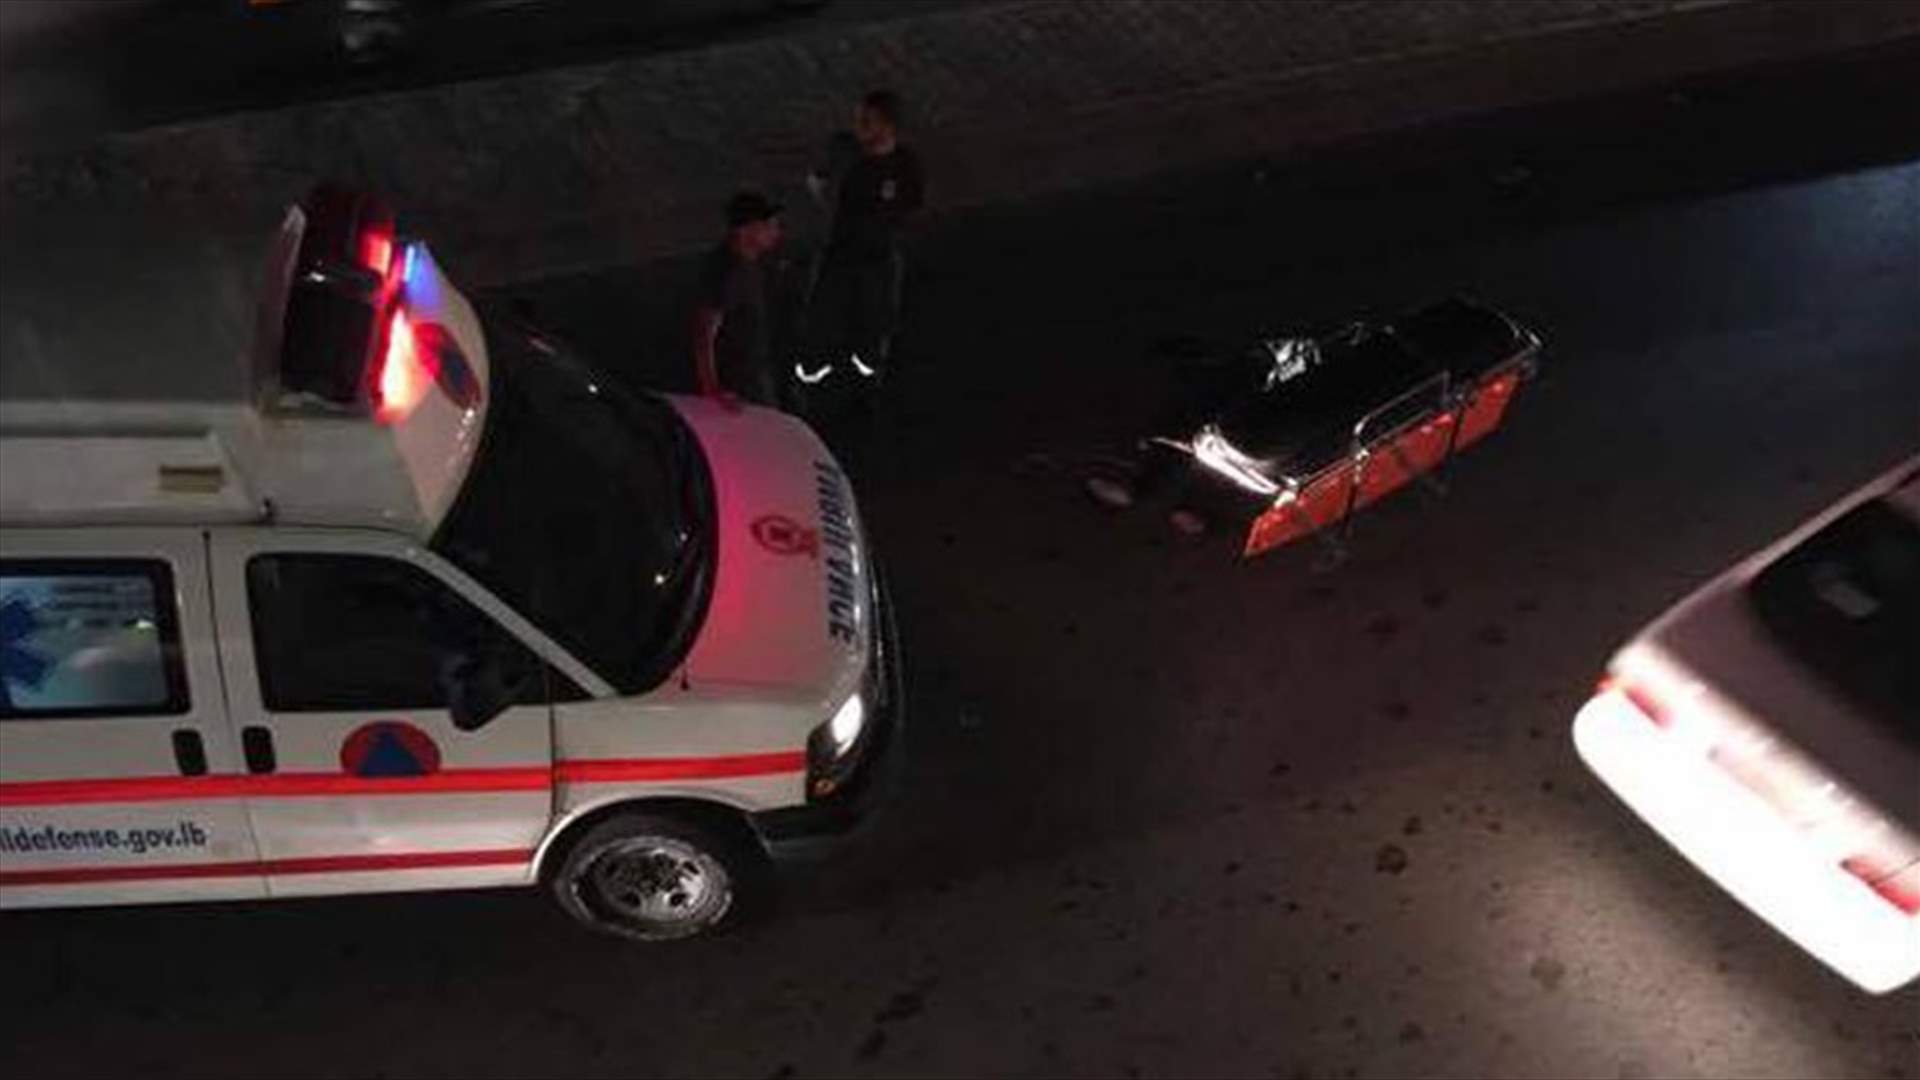 بالصورة- قتيل بحادث سير على اوتوستراد المدينة الرياضية